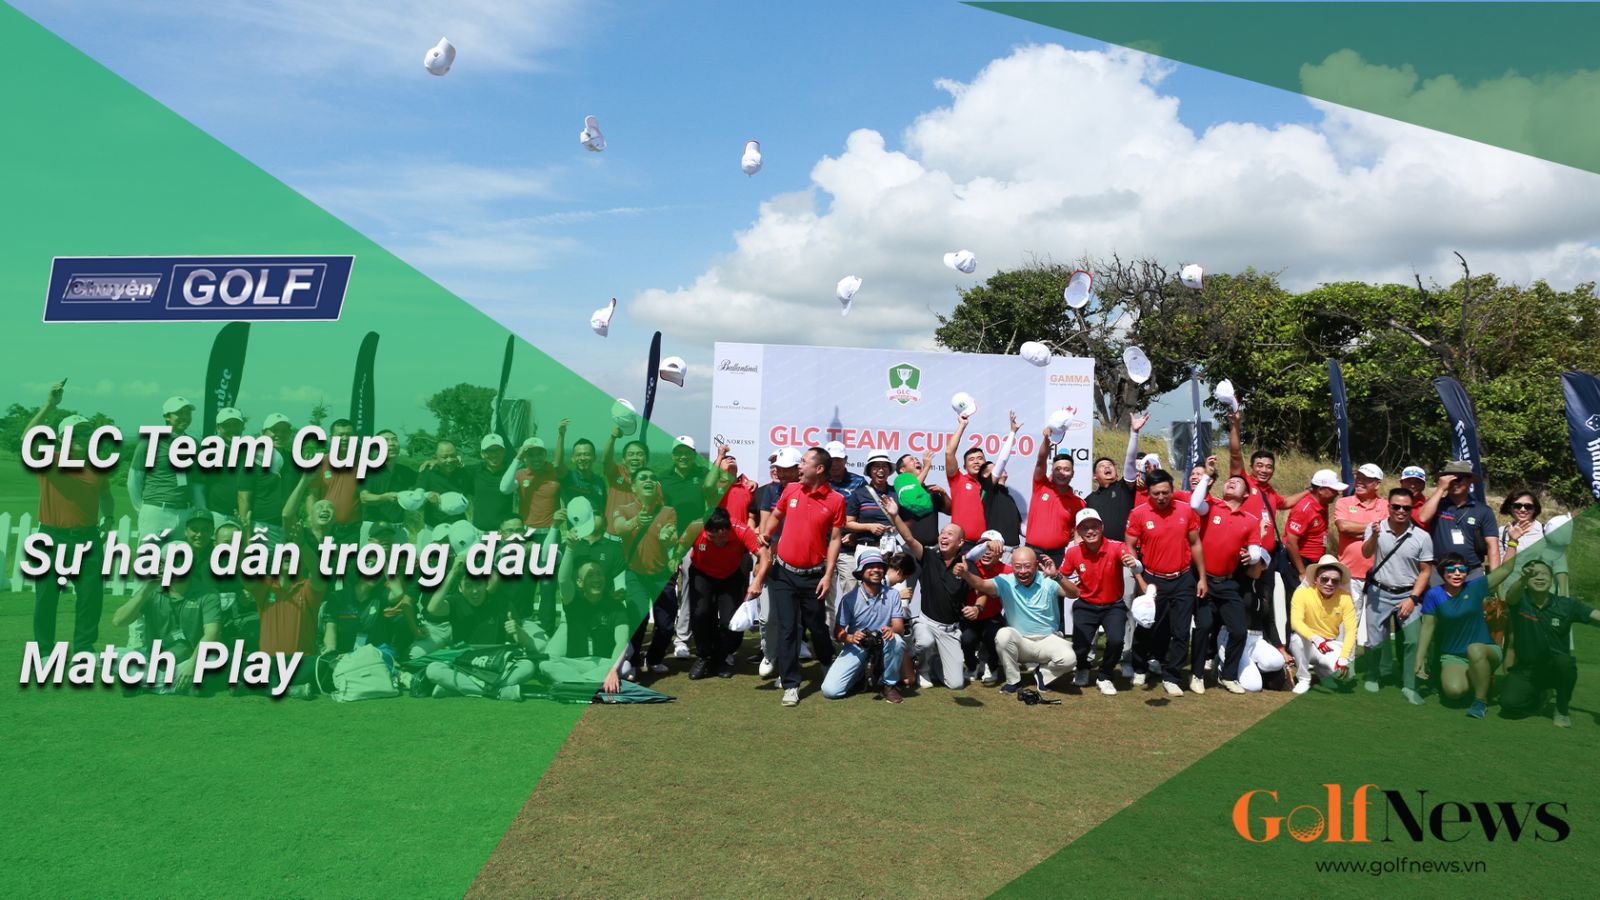 Chuyện Golf 80: GLC Team Cup – Sự hấp dẫn trong đấu Match Play